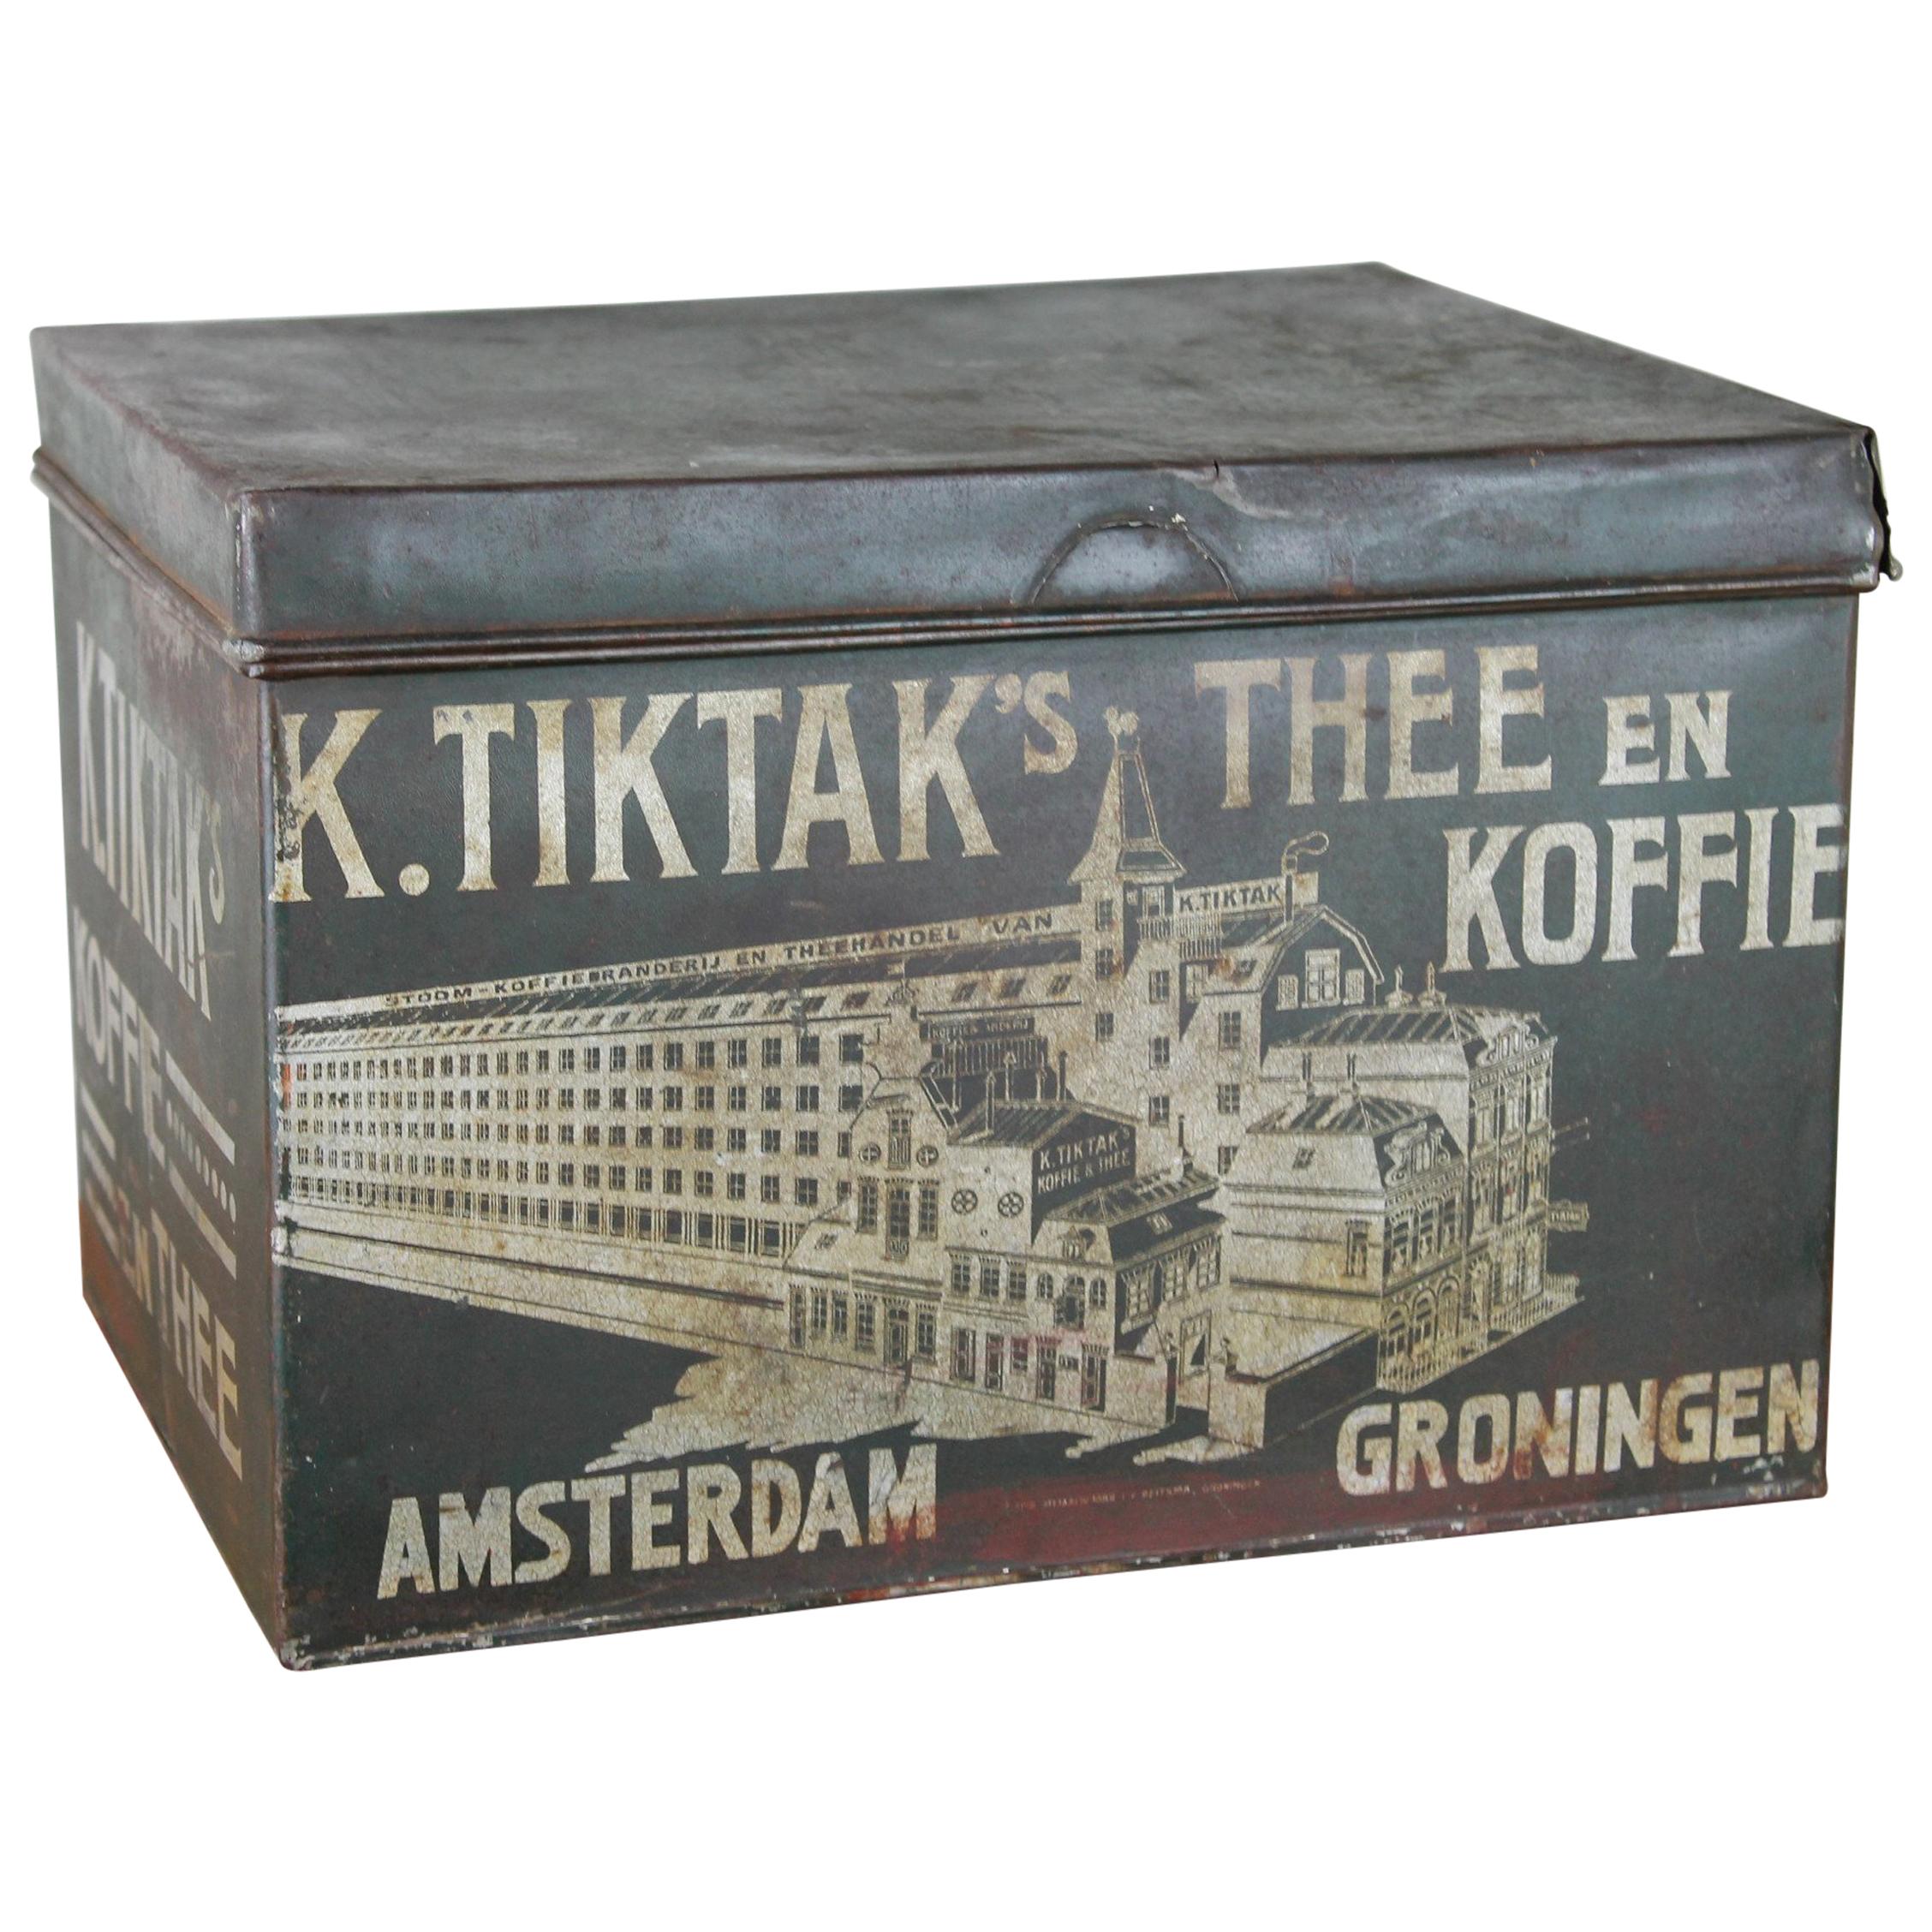 Antike Kaffee- und Teedose von K. Tiktak's Amsterdam Groningen, frühes 20. Jahrhundert